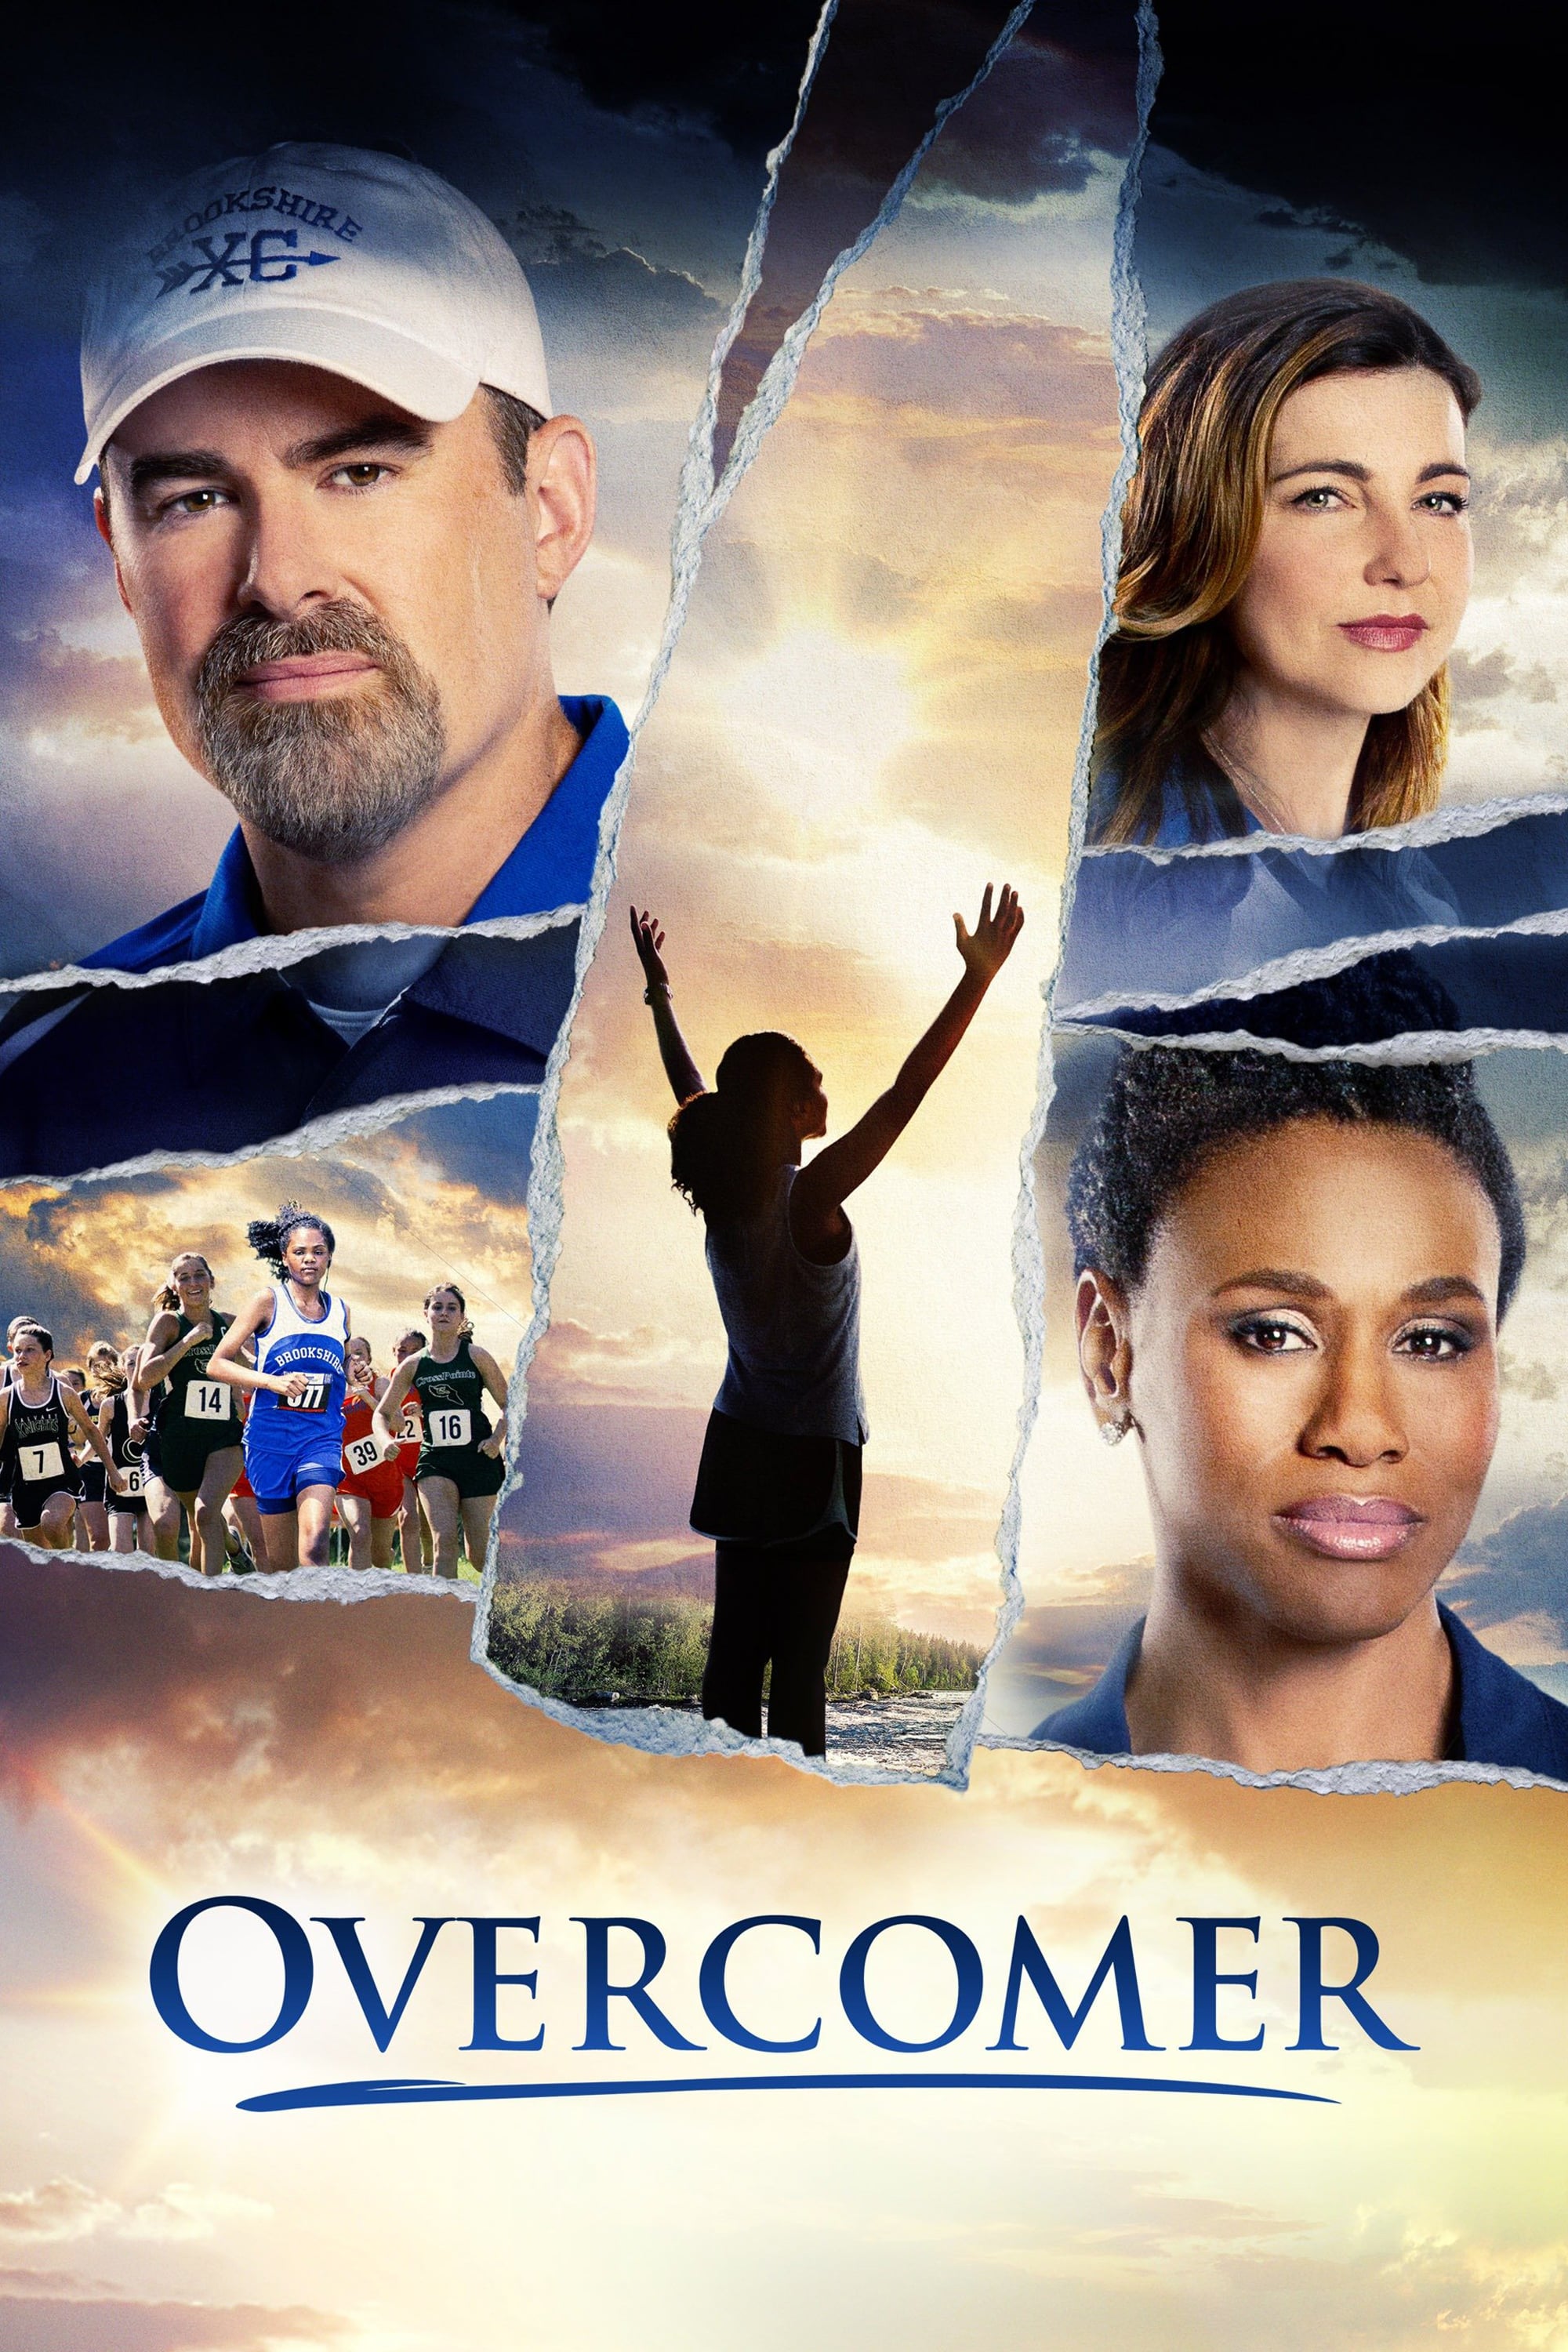 دانلود فیلم Overcomer 2019